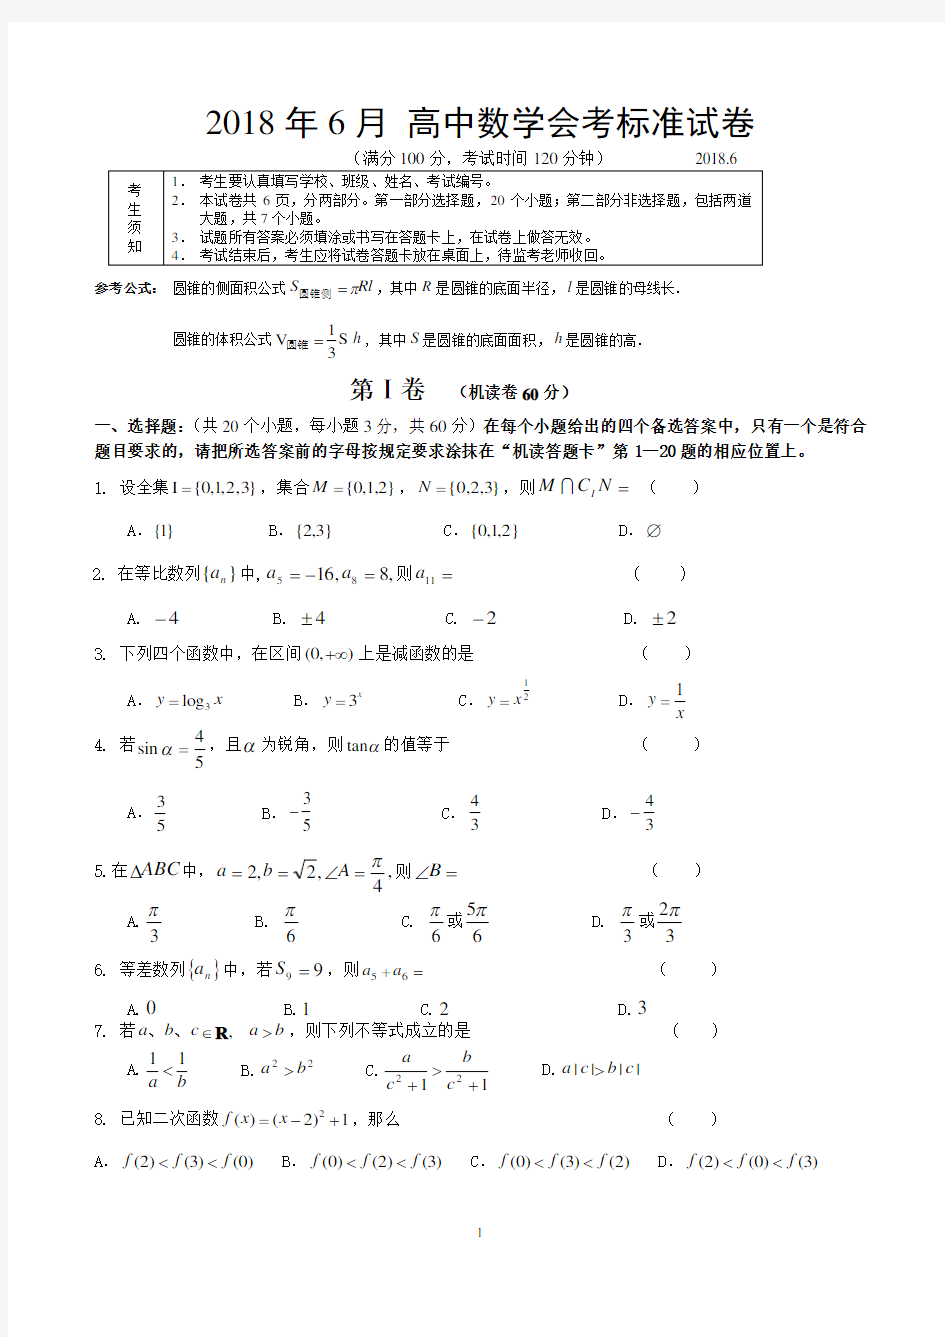 【高中会考】2018年6月 高中数学会考标准试卷(含答案)